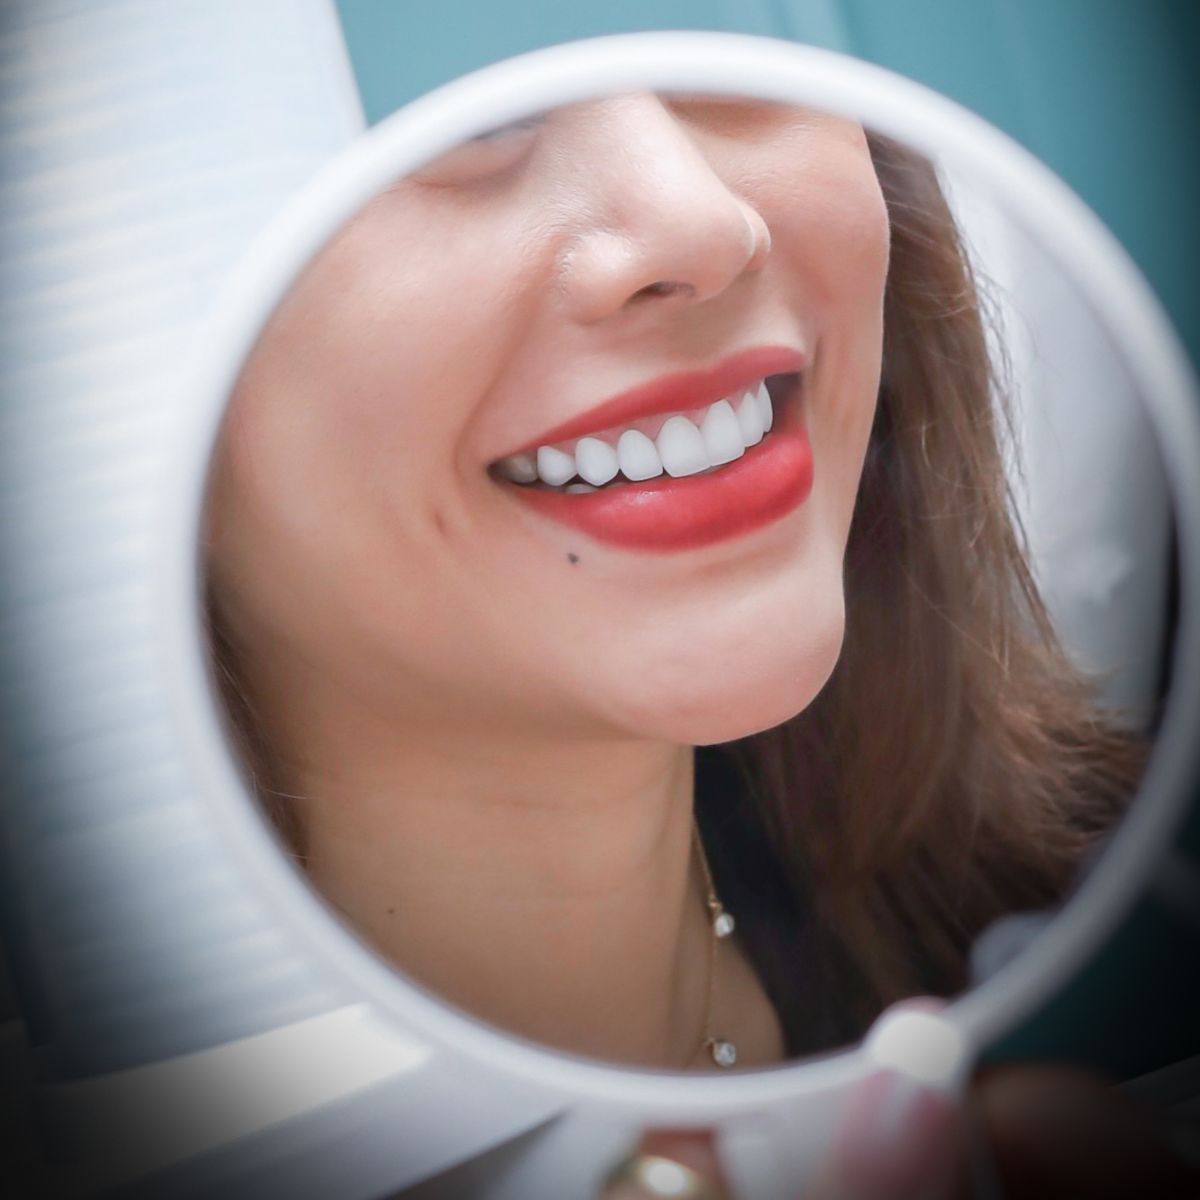 Dán sứ Veneer là phương pháp phục hình răng an toàn, hiện đại, hiệu quả cao